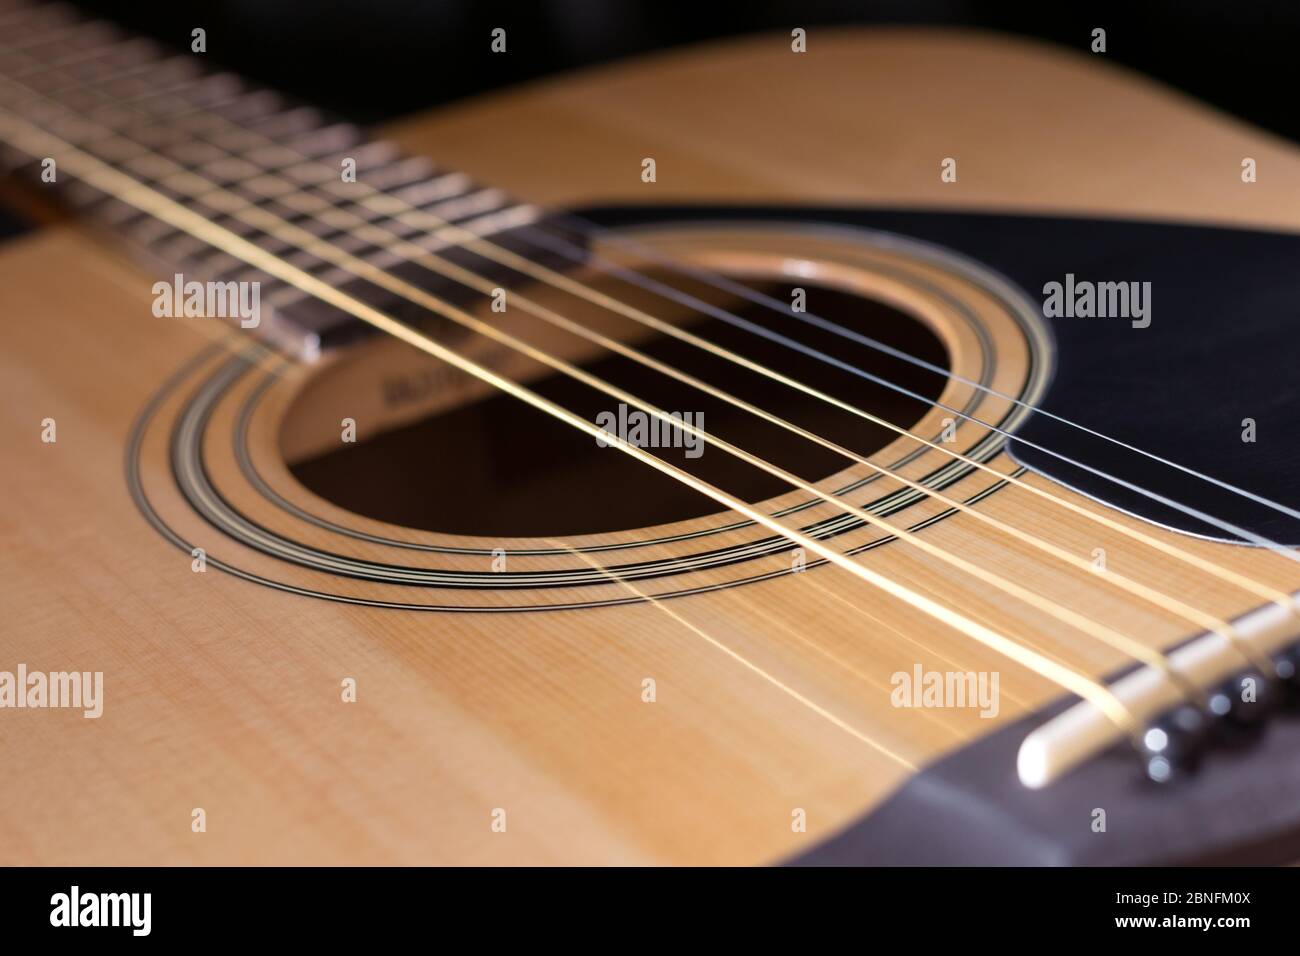 Teile der akustischen Gitarre Nahaufnahme Stockfotografie - Alamy